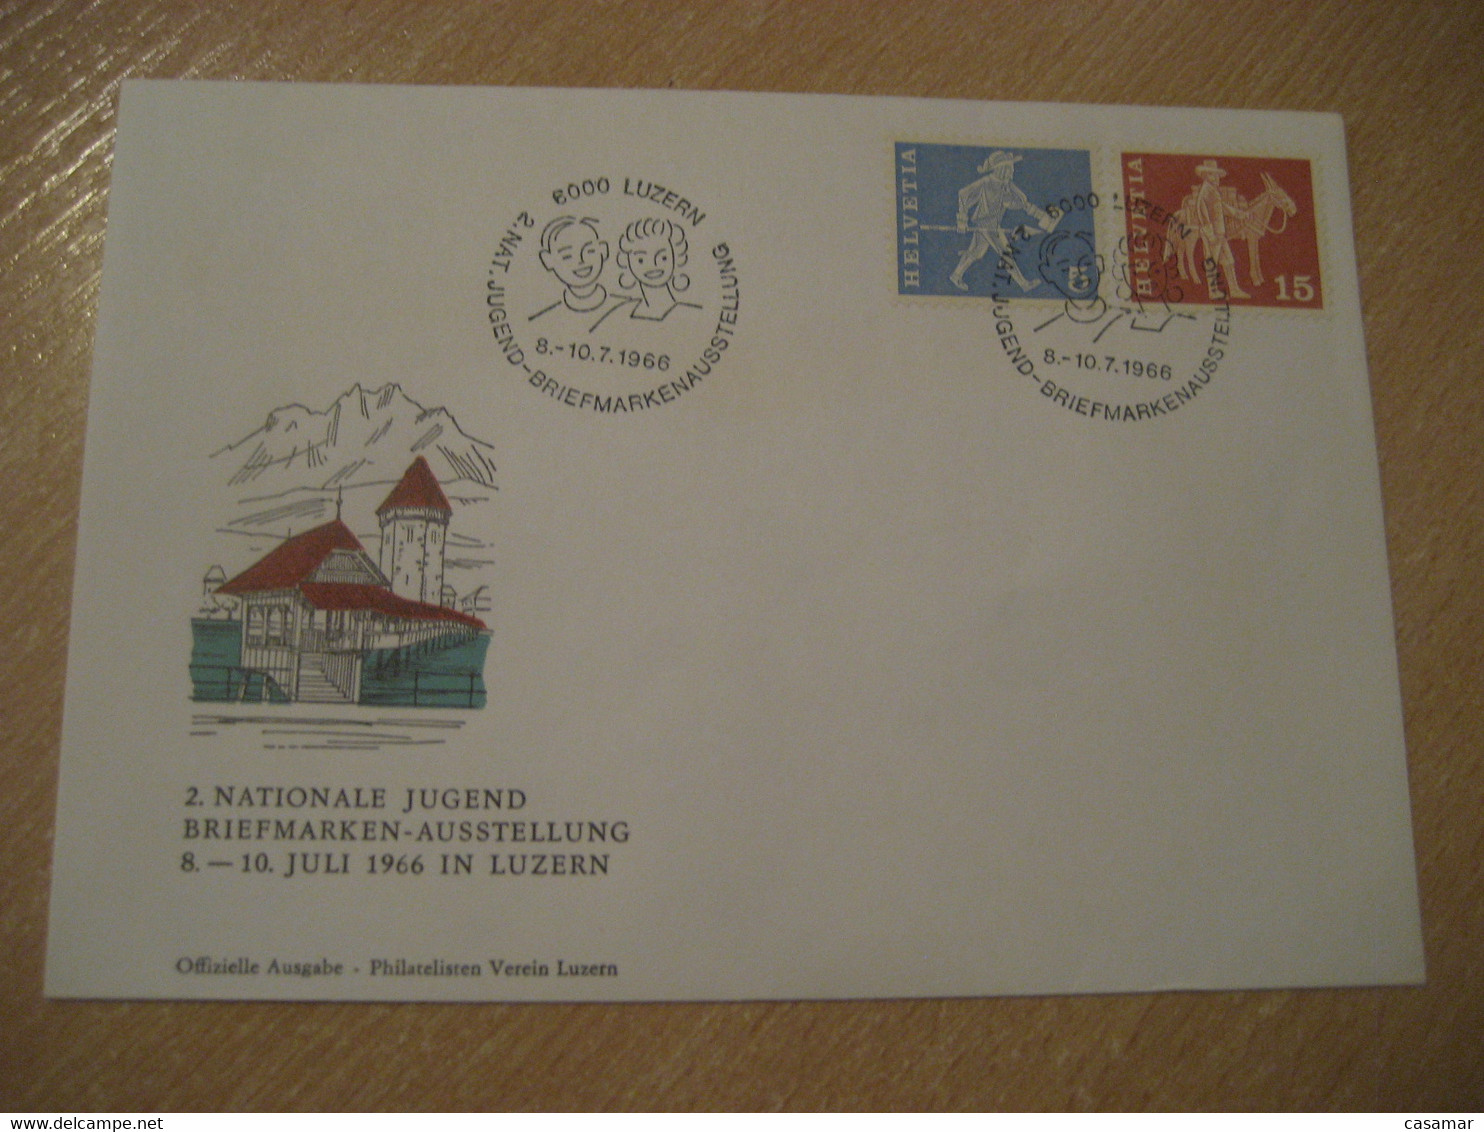 LUZERN 1966 Donkey Donkeys Stamp Jugend Briefmarken Cancel Bridge Water Tower Cover SWITZERLAND Lucerne - Ezels